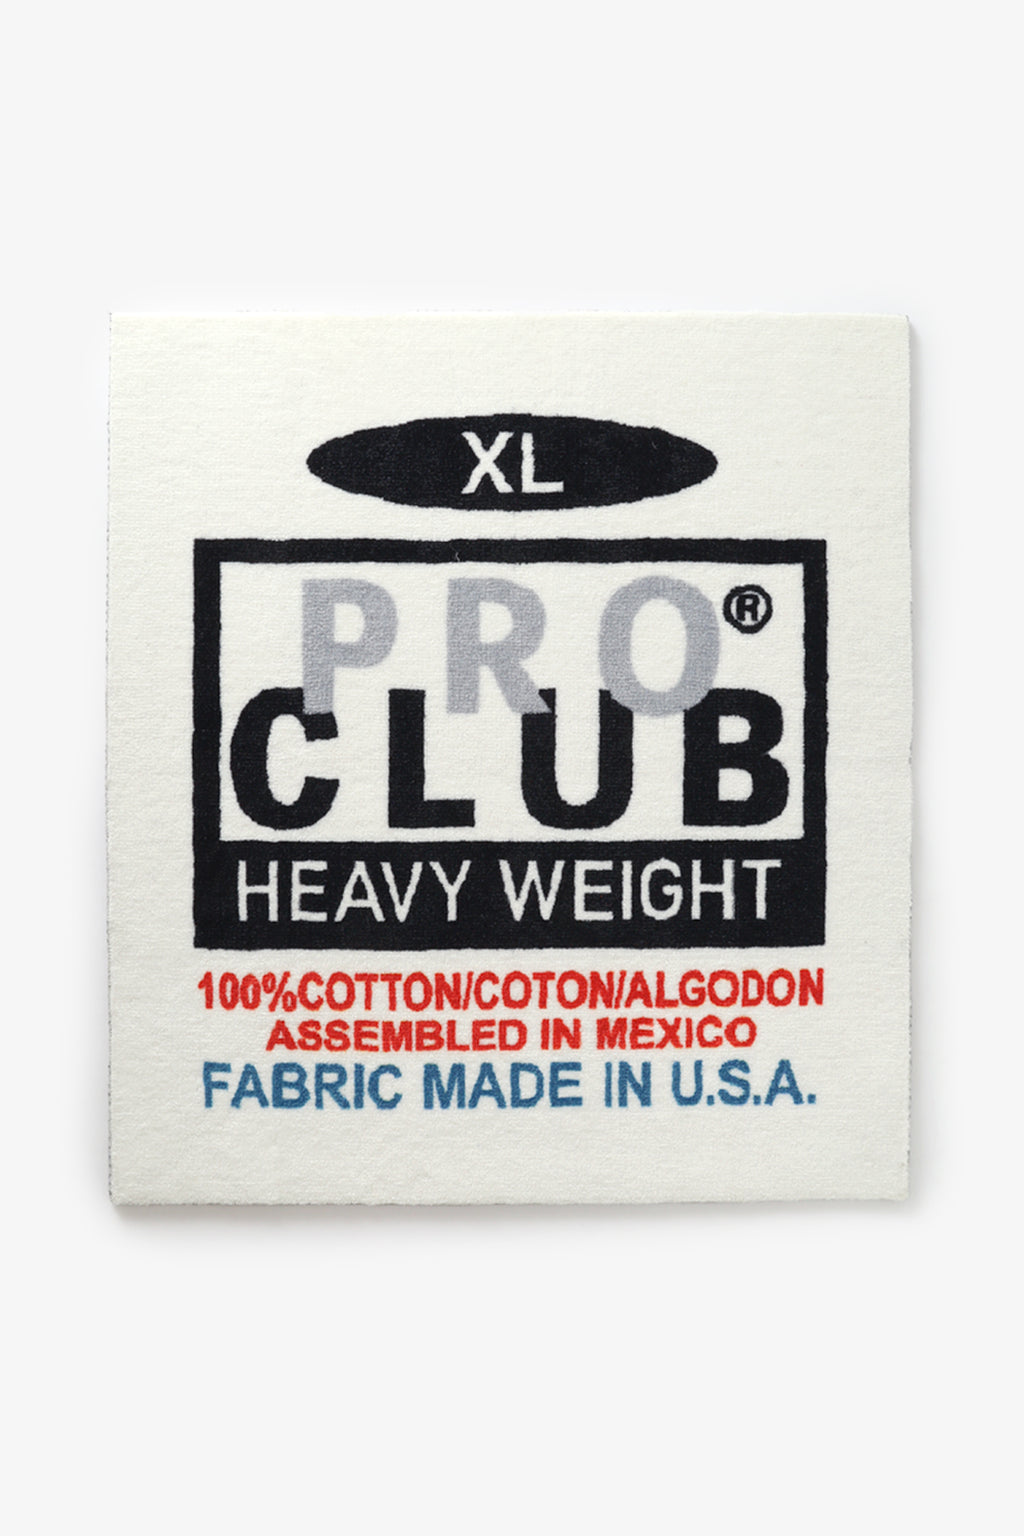 Pro Club Heavyweight Label Rug